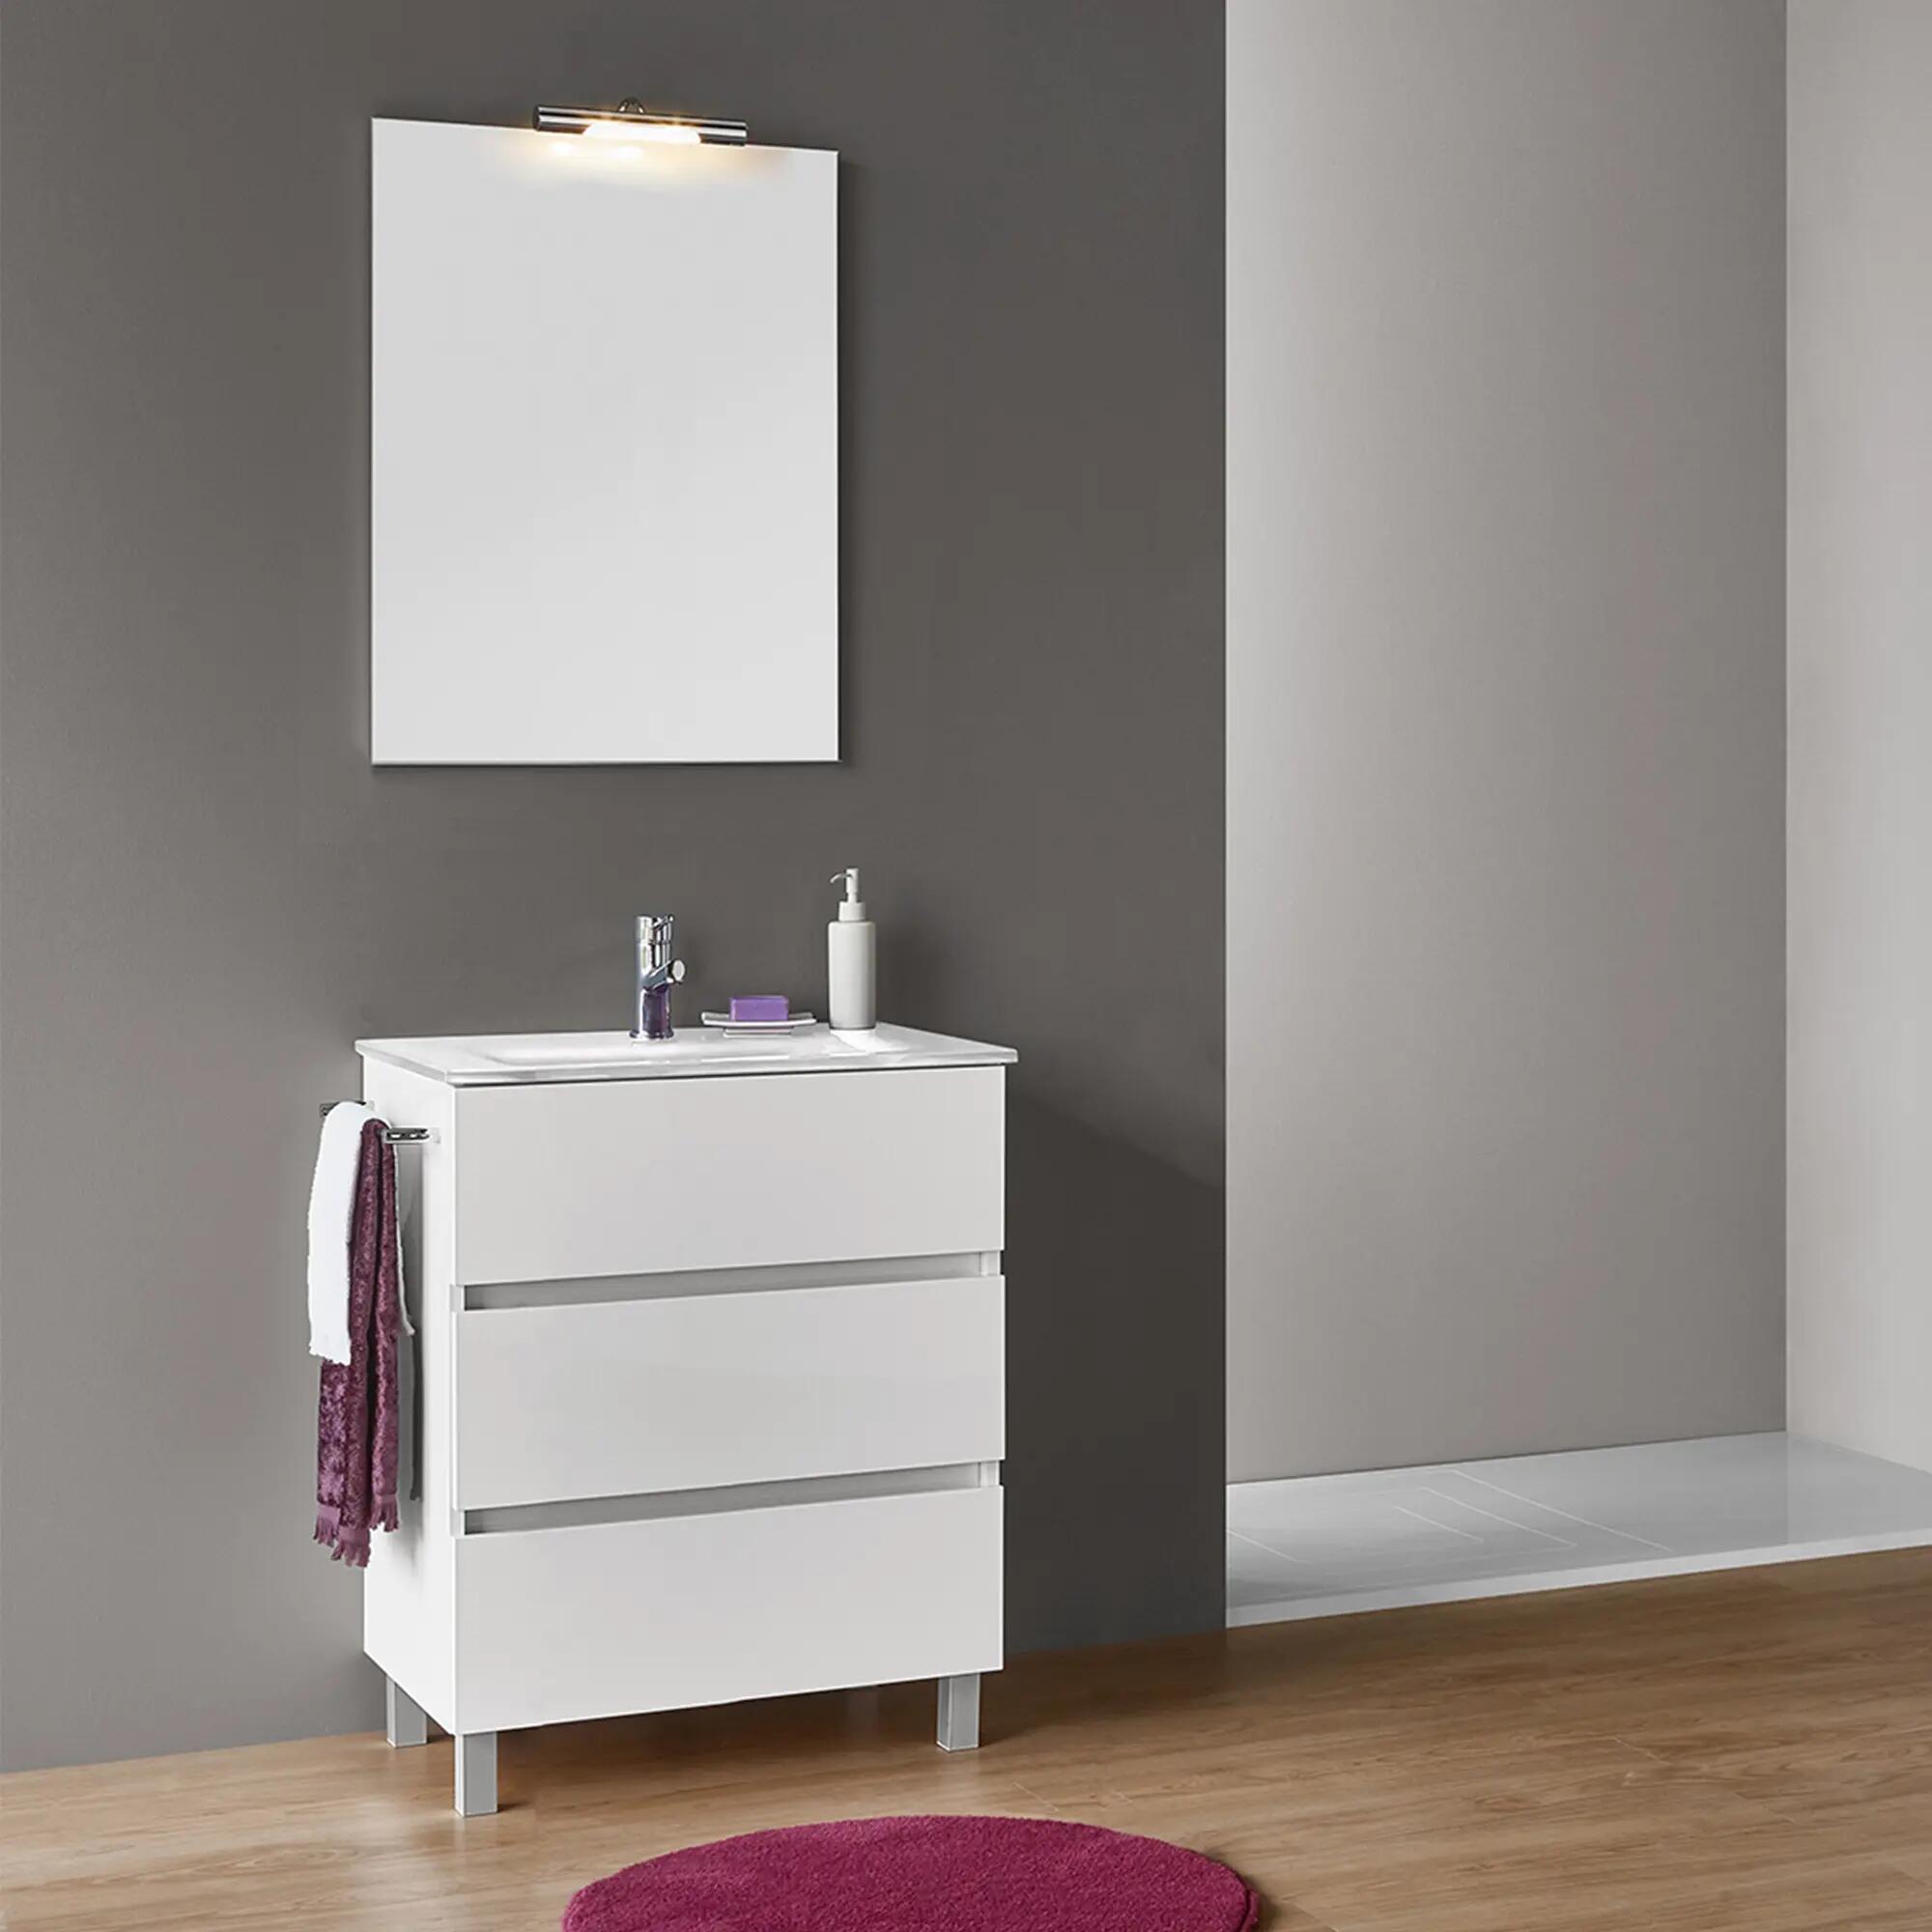 LEROY MERLIN - Móveis de Casa de Banho  Os móveis são indispensáveis na  sua casa de banho! Opte por um móvel simples mas elegante e funcional! ✨  Descubra a variedade de